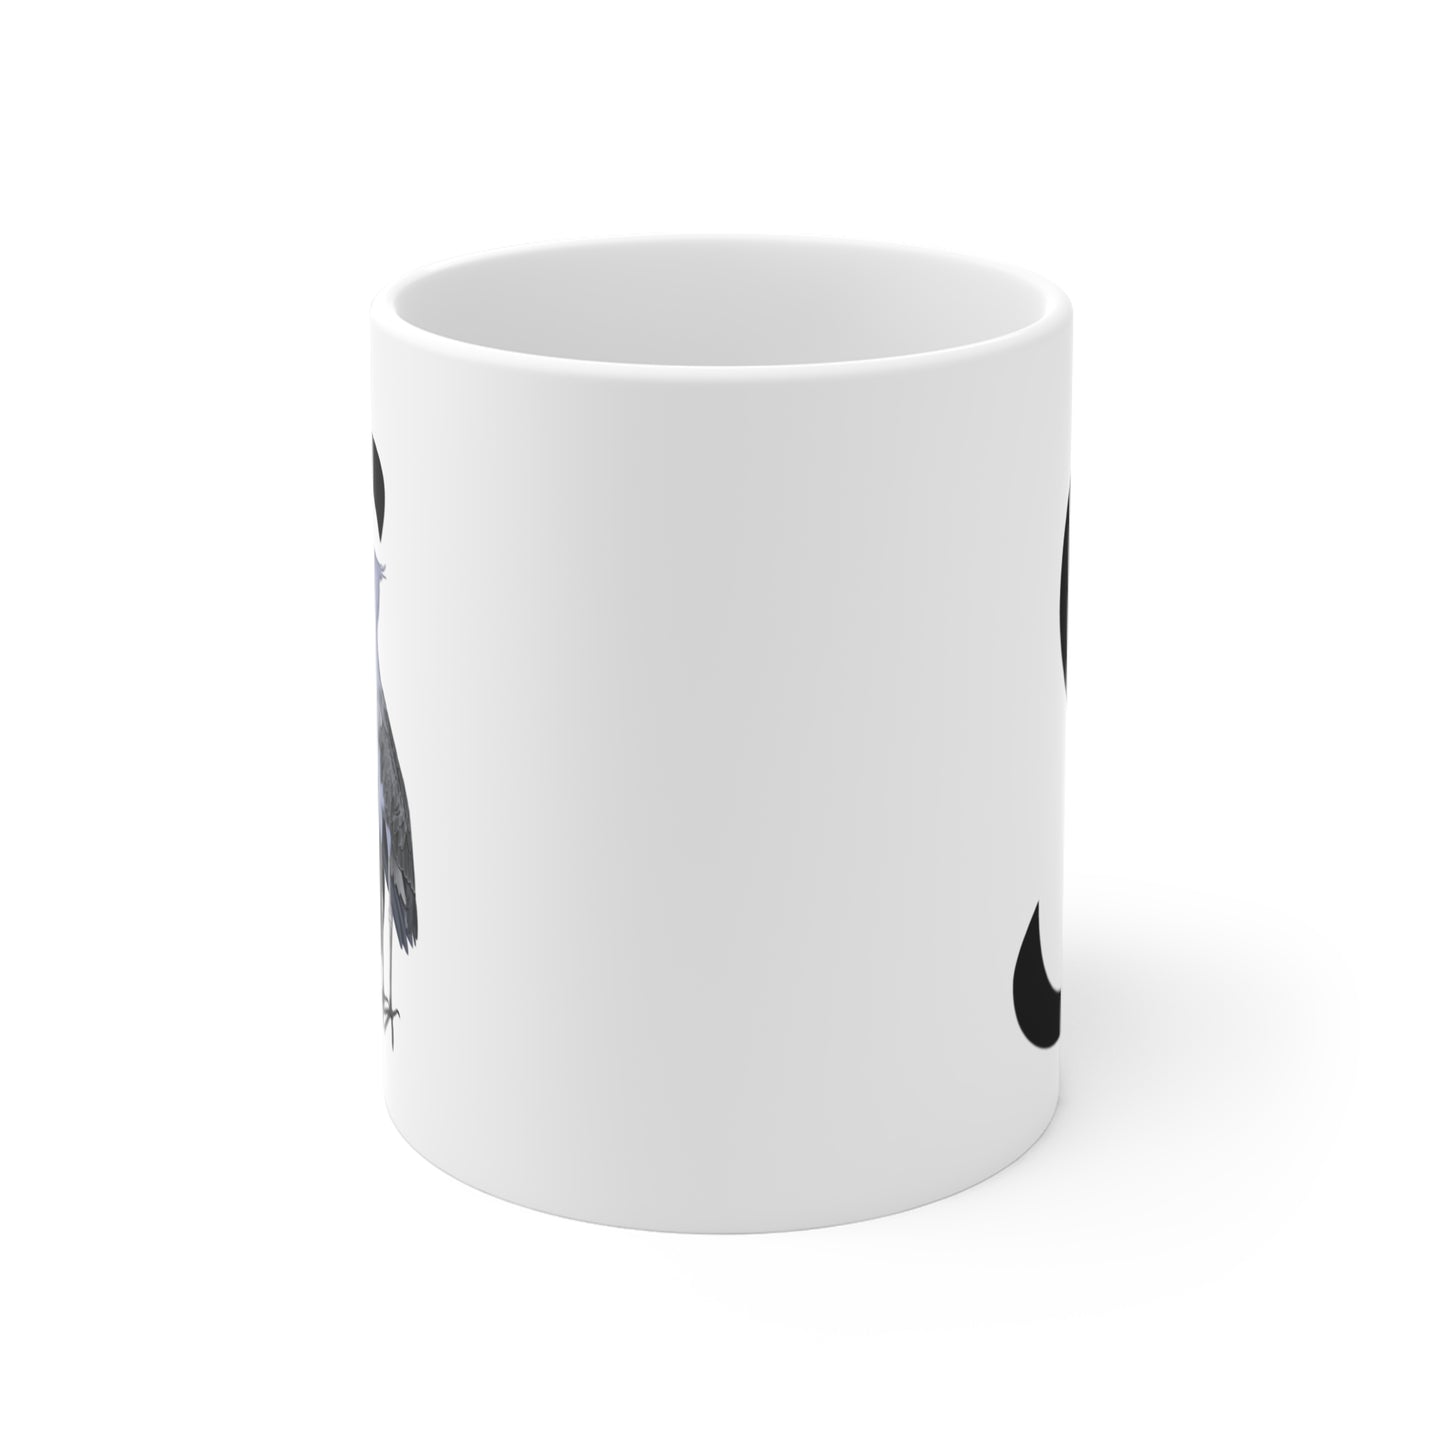 Shoebill Letter S Bird Ceramic Mug 11oz White